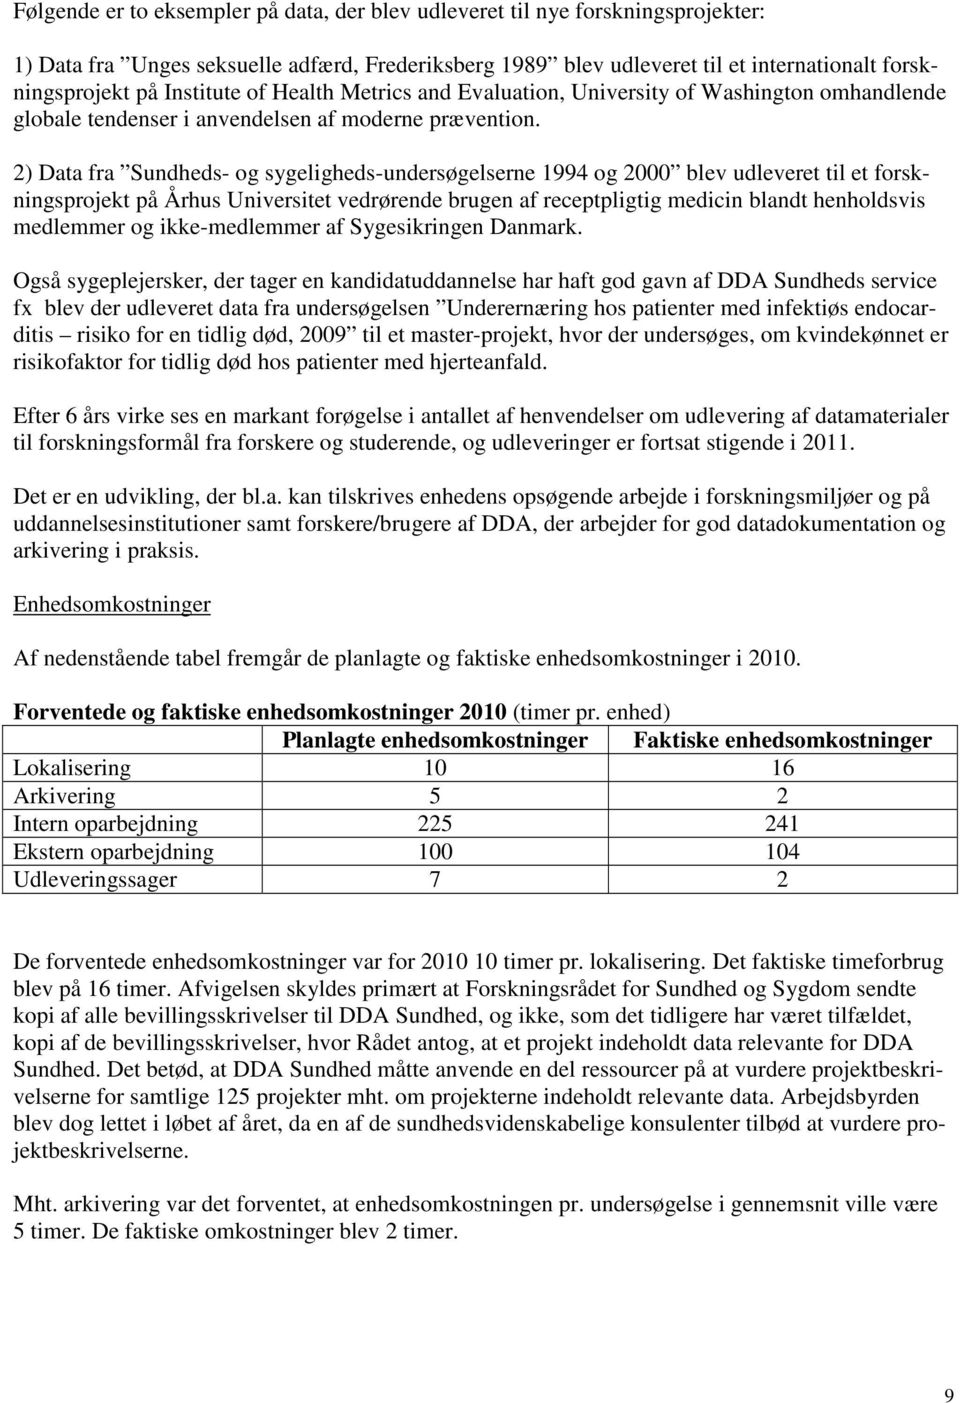 2) Data fra Sundheds- og sygeligheds-undersøgelserne 1994 og 2000 blev udleveret til et forskningsprojekt på Århus Universitet vedrørende brugen af receptpligtig medicin blandt henholdsvis medlemmer